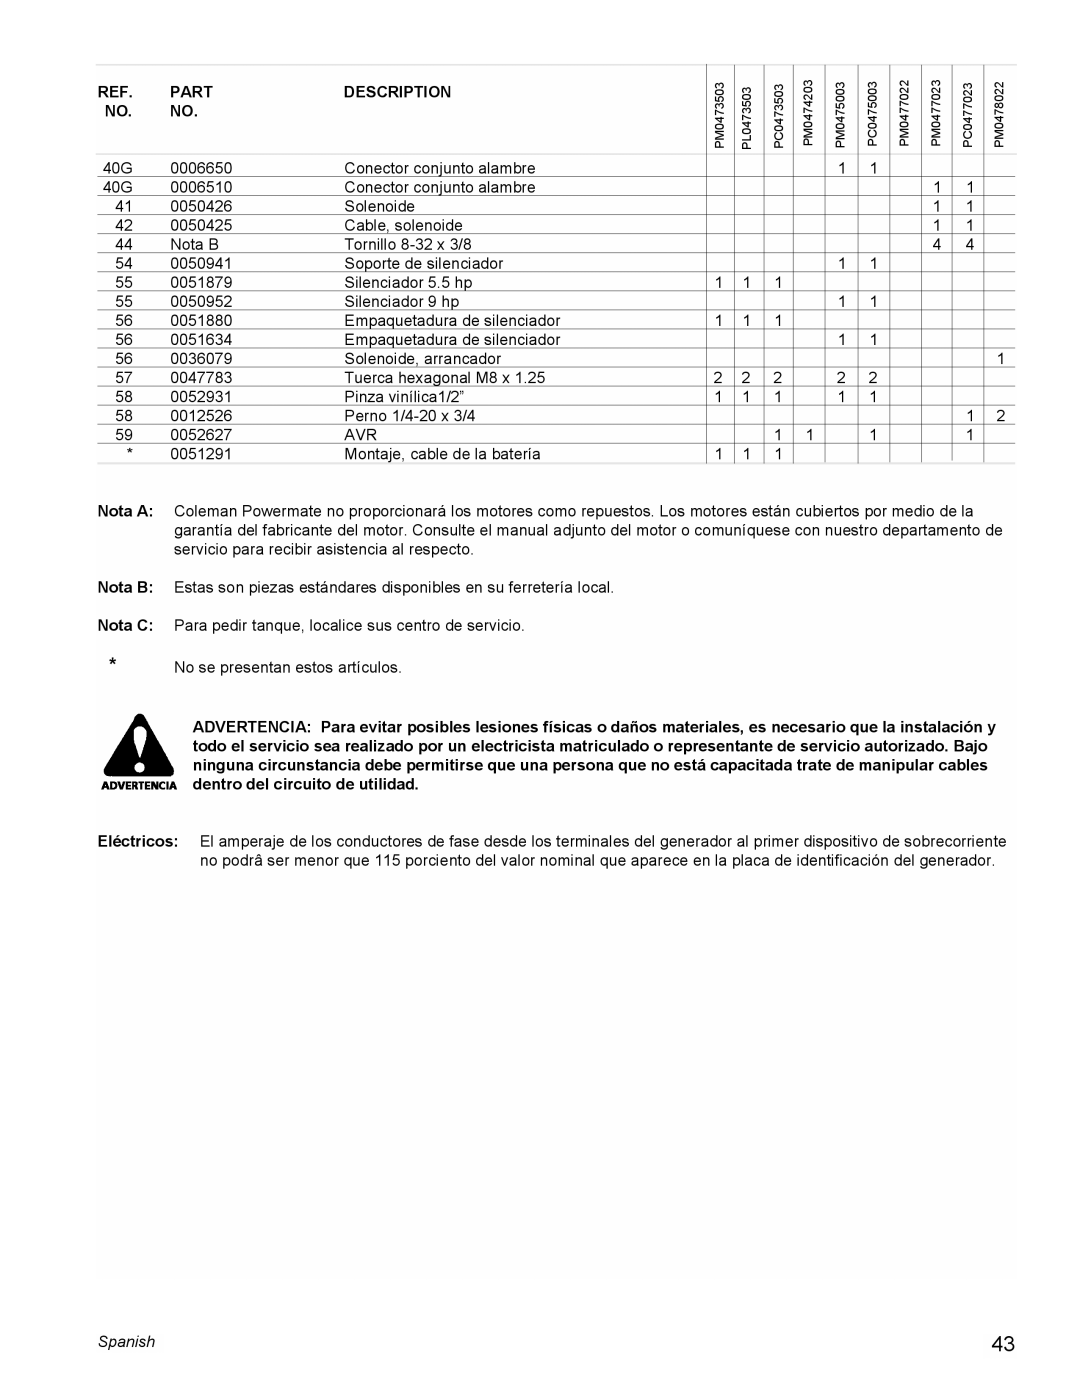 Powermate PM0477022, PL0473503, PM0478022, PM0473503, PM0474203, PM0475003, PM0477023, PC0473503 manual Part, Description, Spanish 